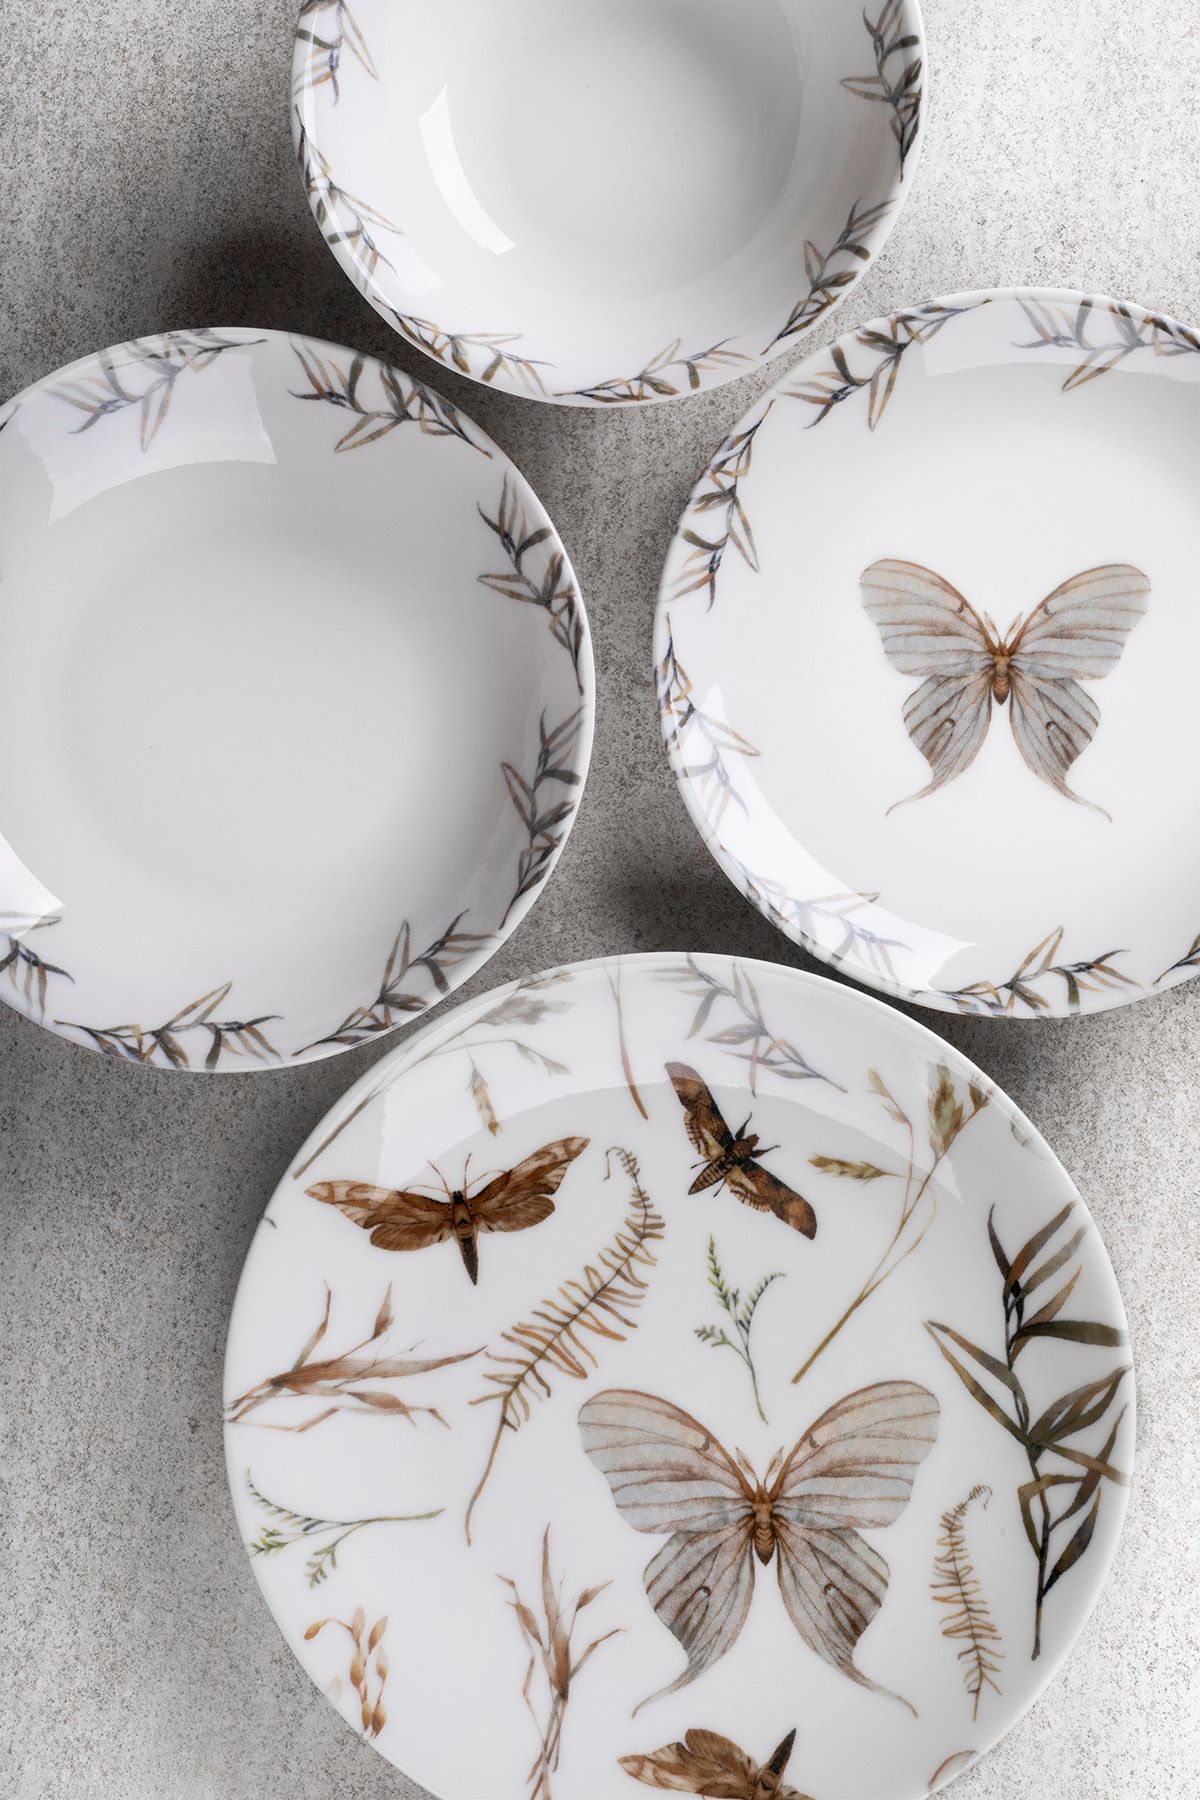 Aryıldız Porselen Butterfly 24 Parça Yemek Takımı